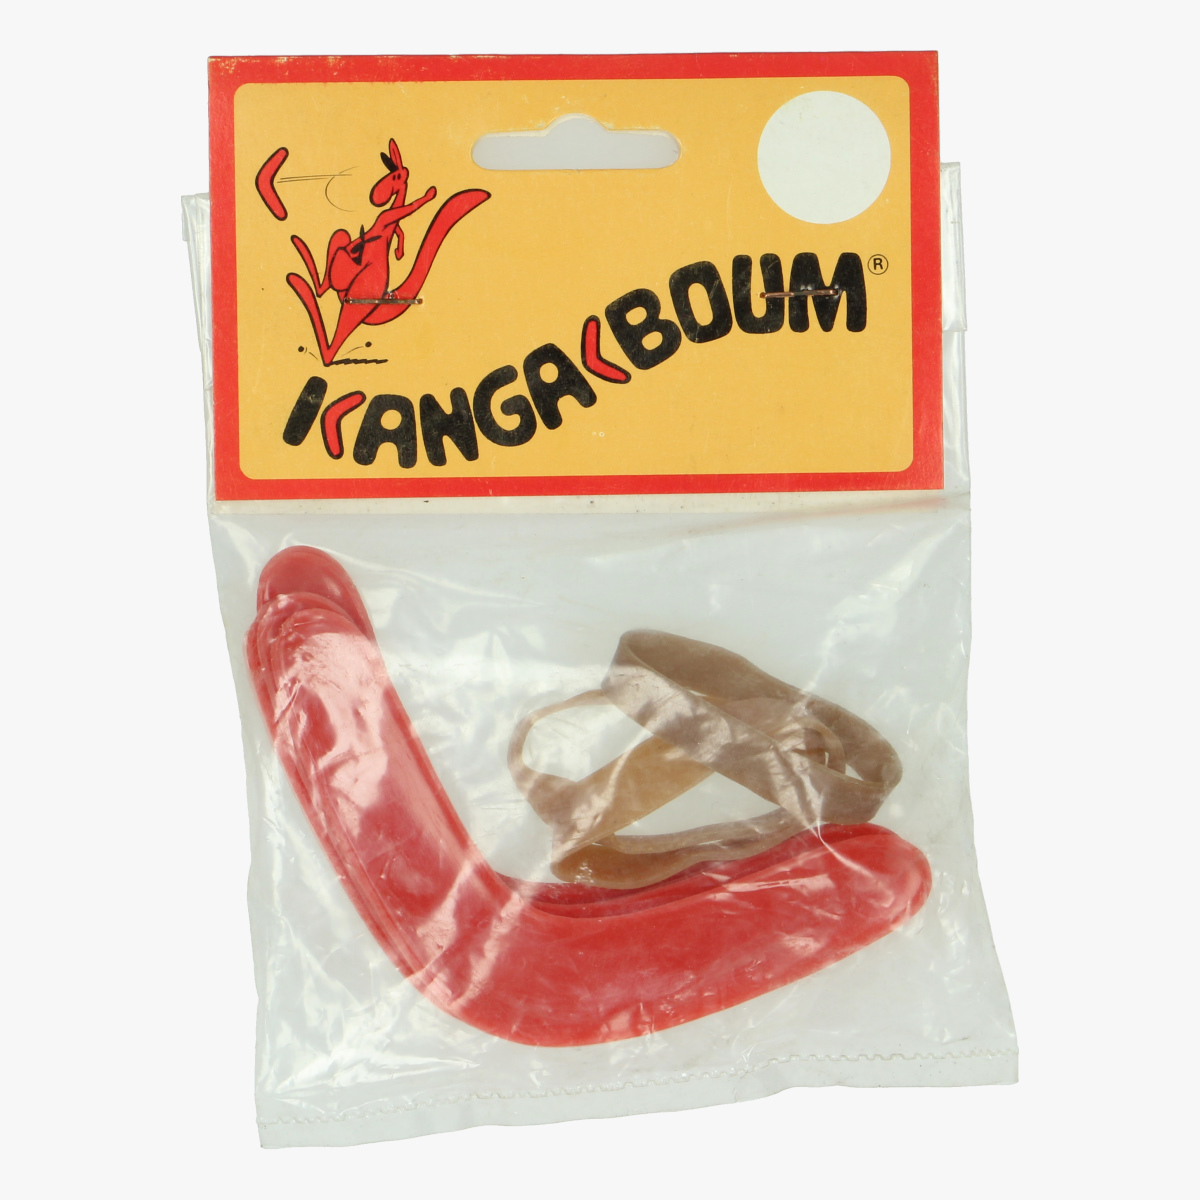 Afbeeldingen van Kangeboum onderdelen